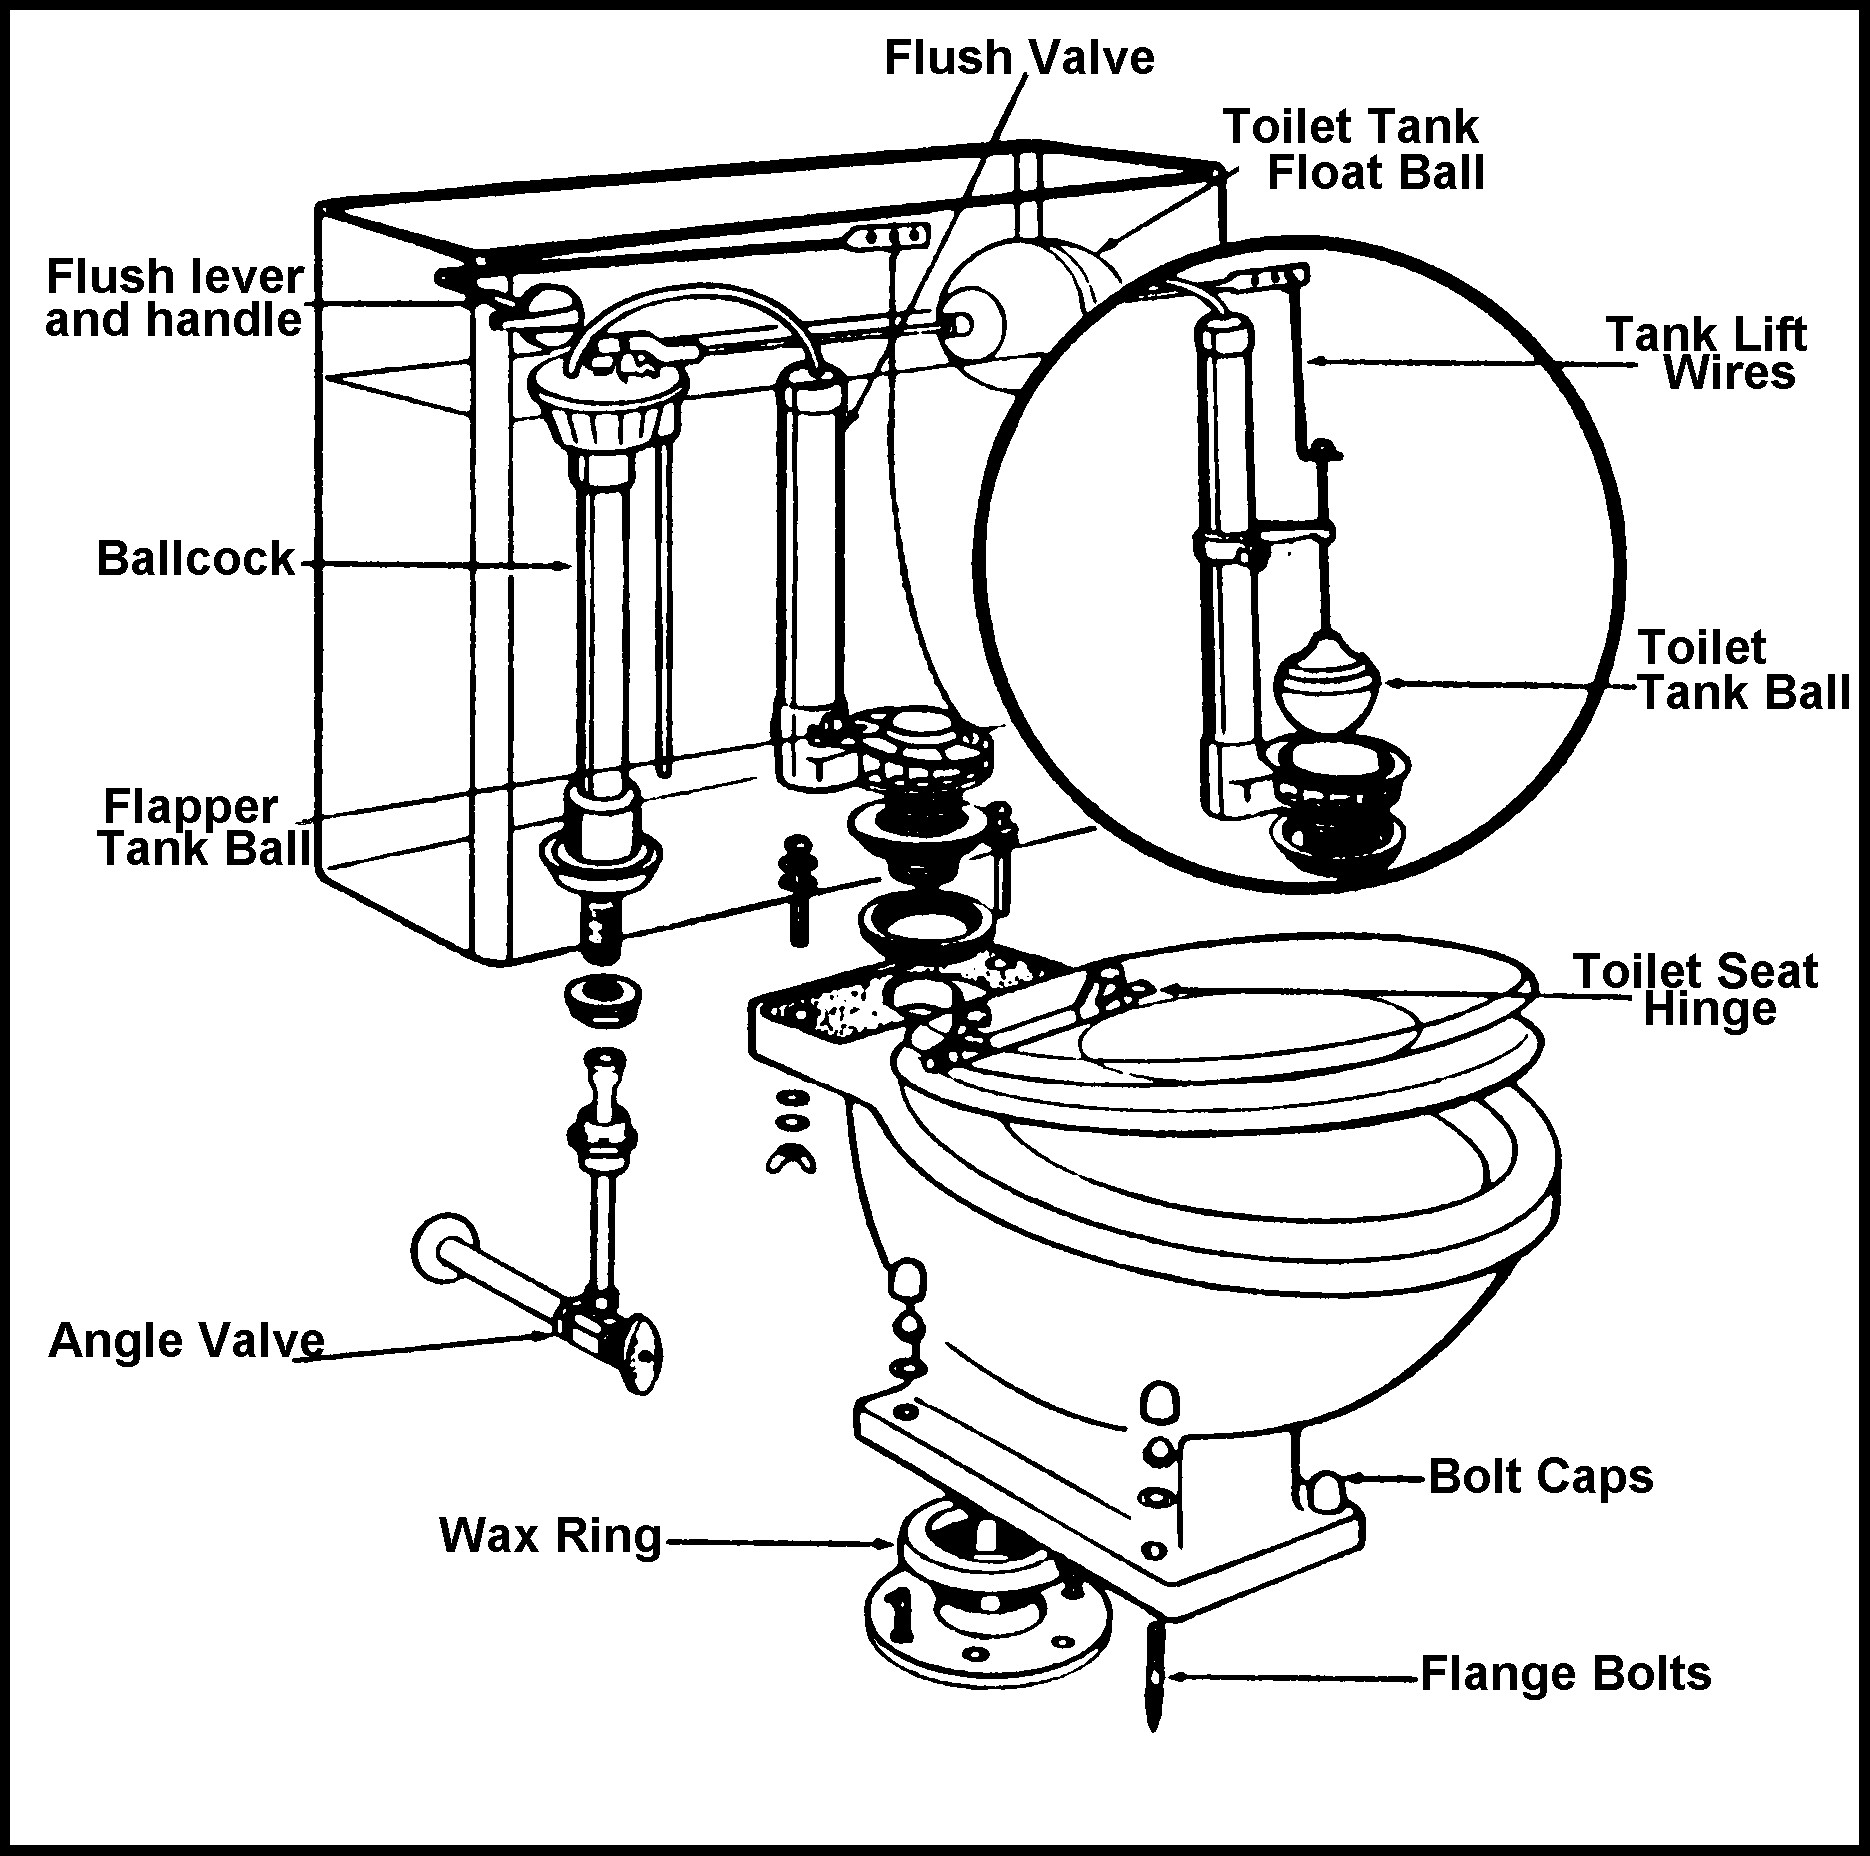 Toilet Bowl Tank Diagram